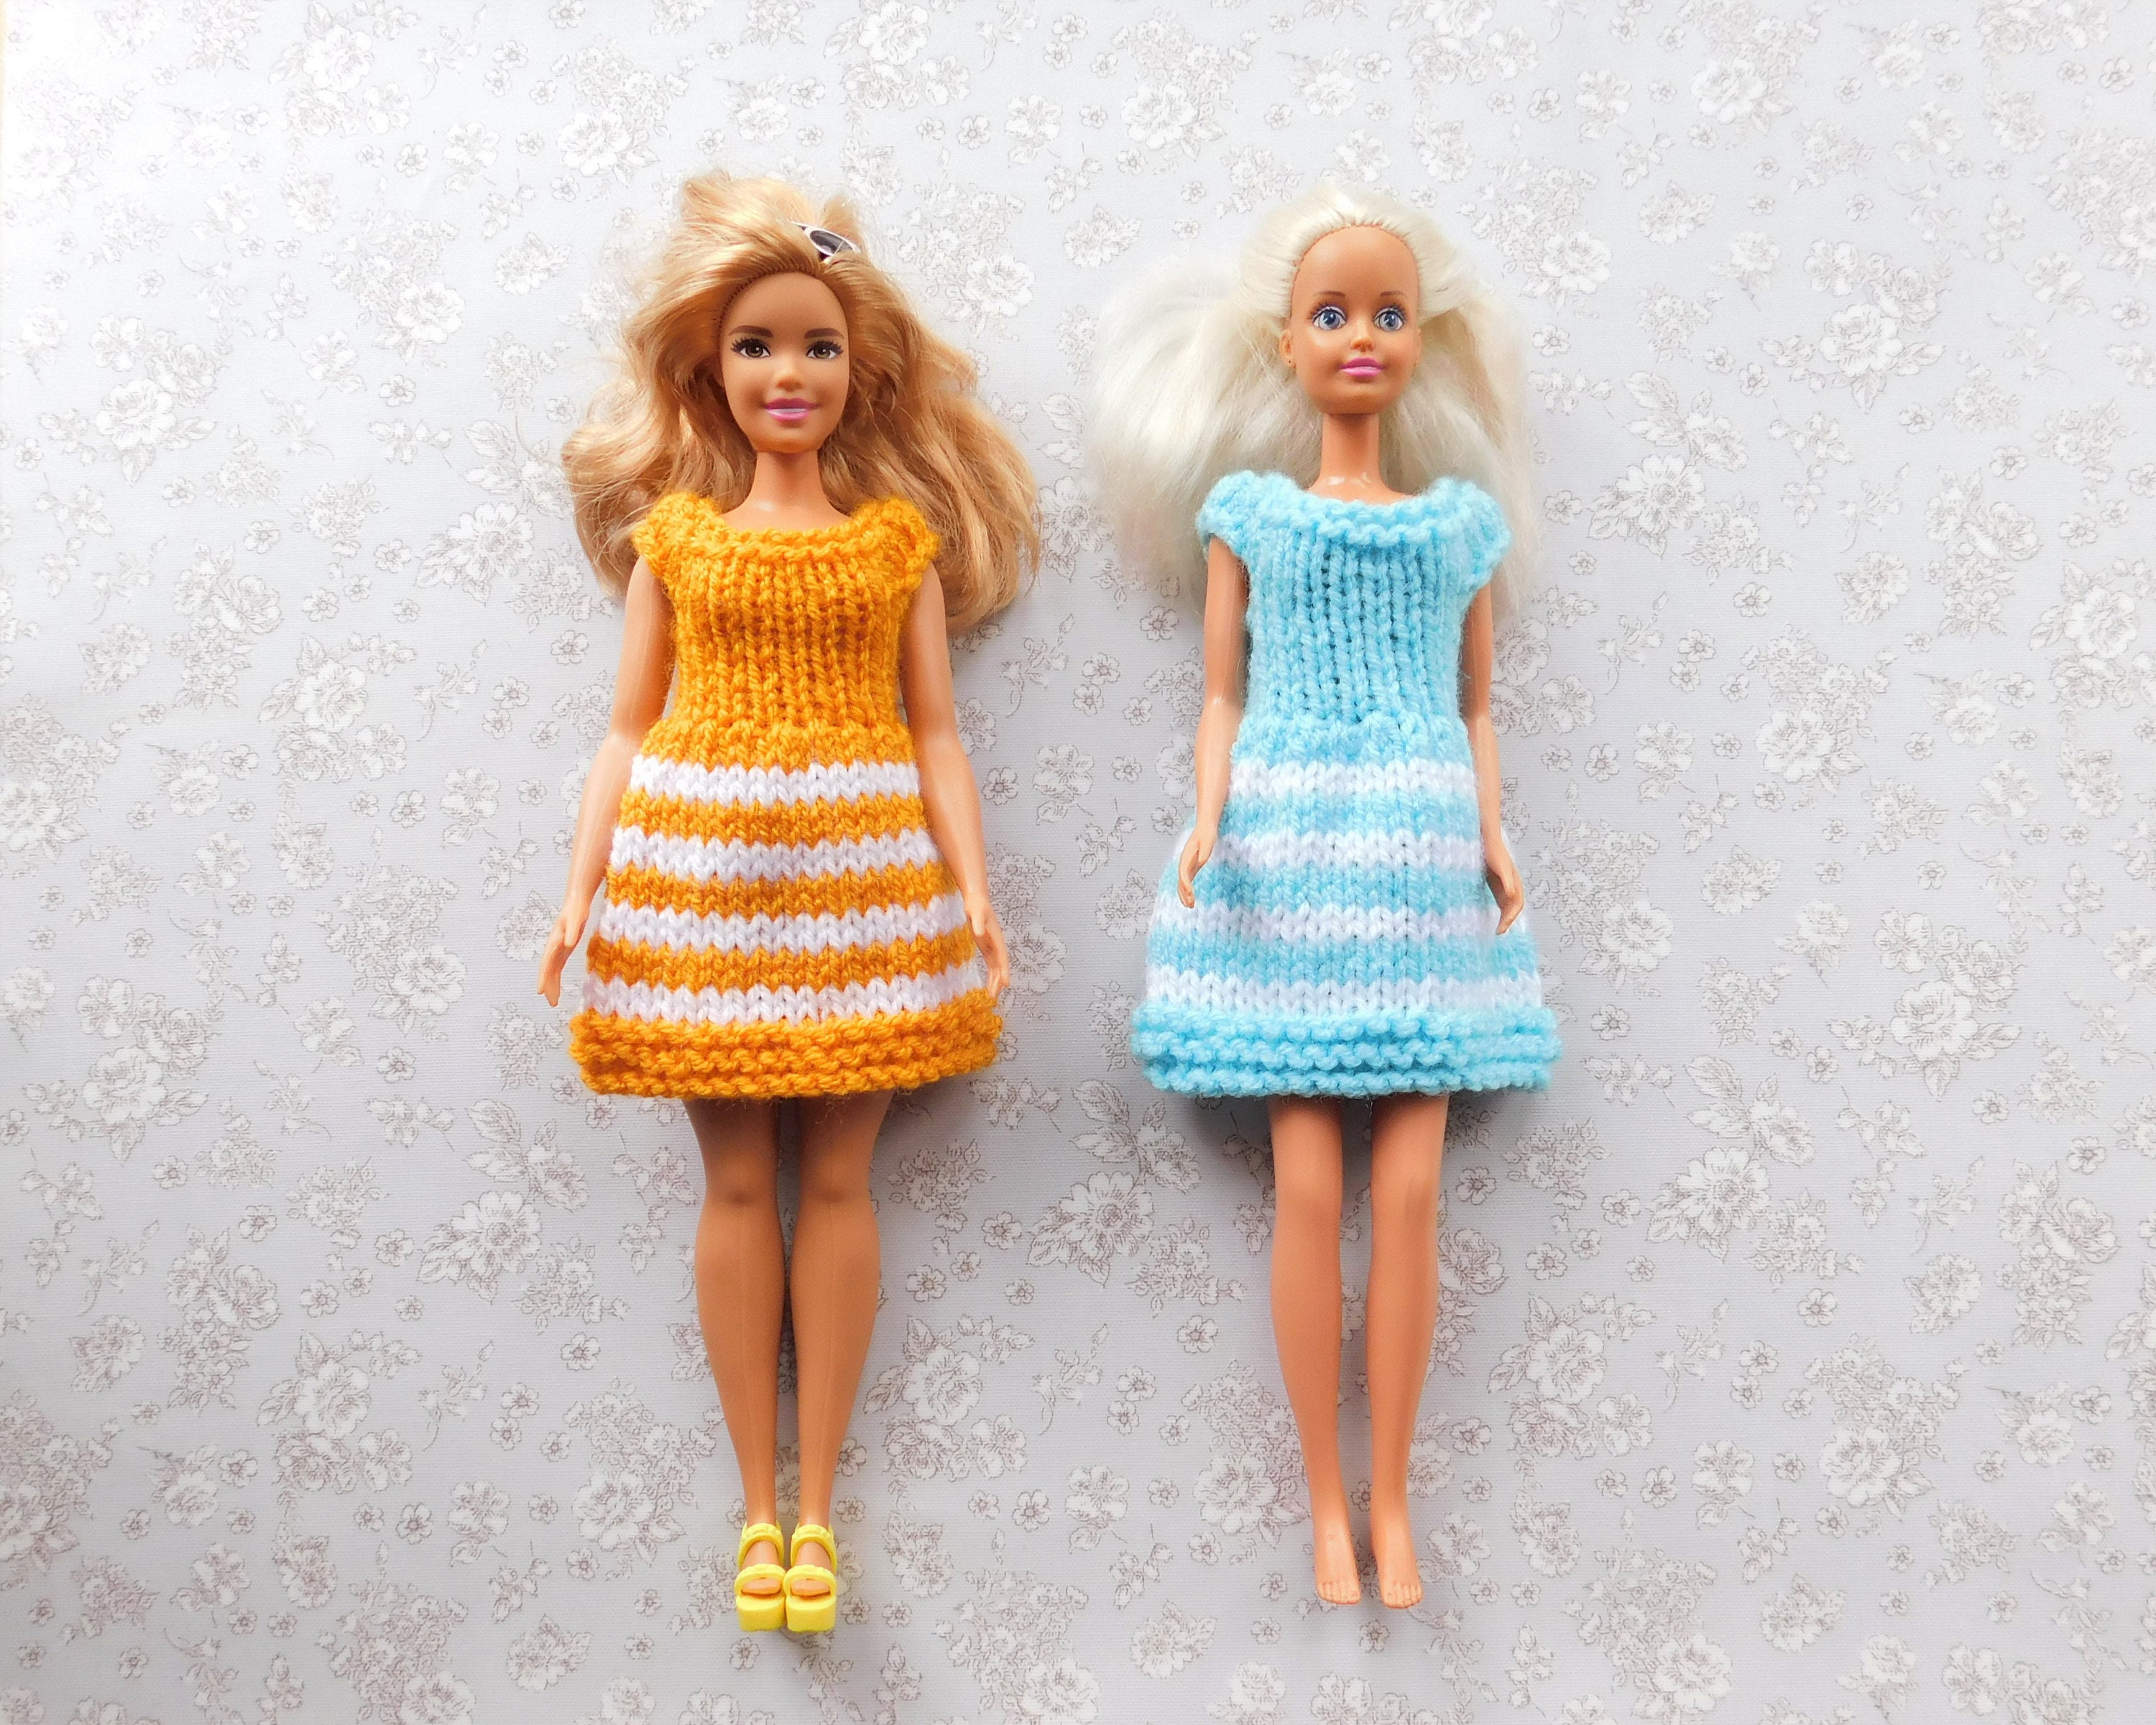 plein Vuilnisbak rijm Buy Barbie Fashionista Barbie Clothes Summer Dresses Online in India - Etsy